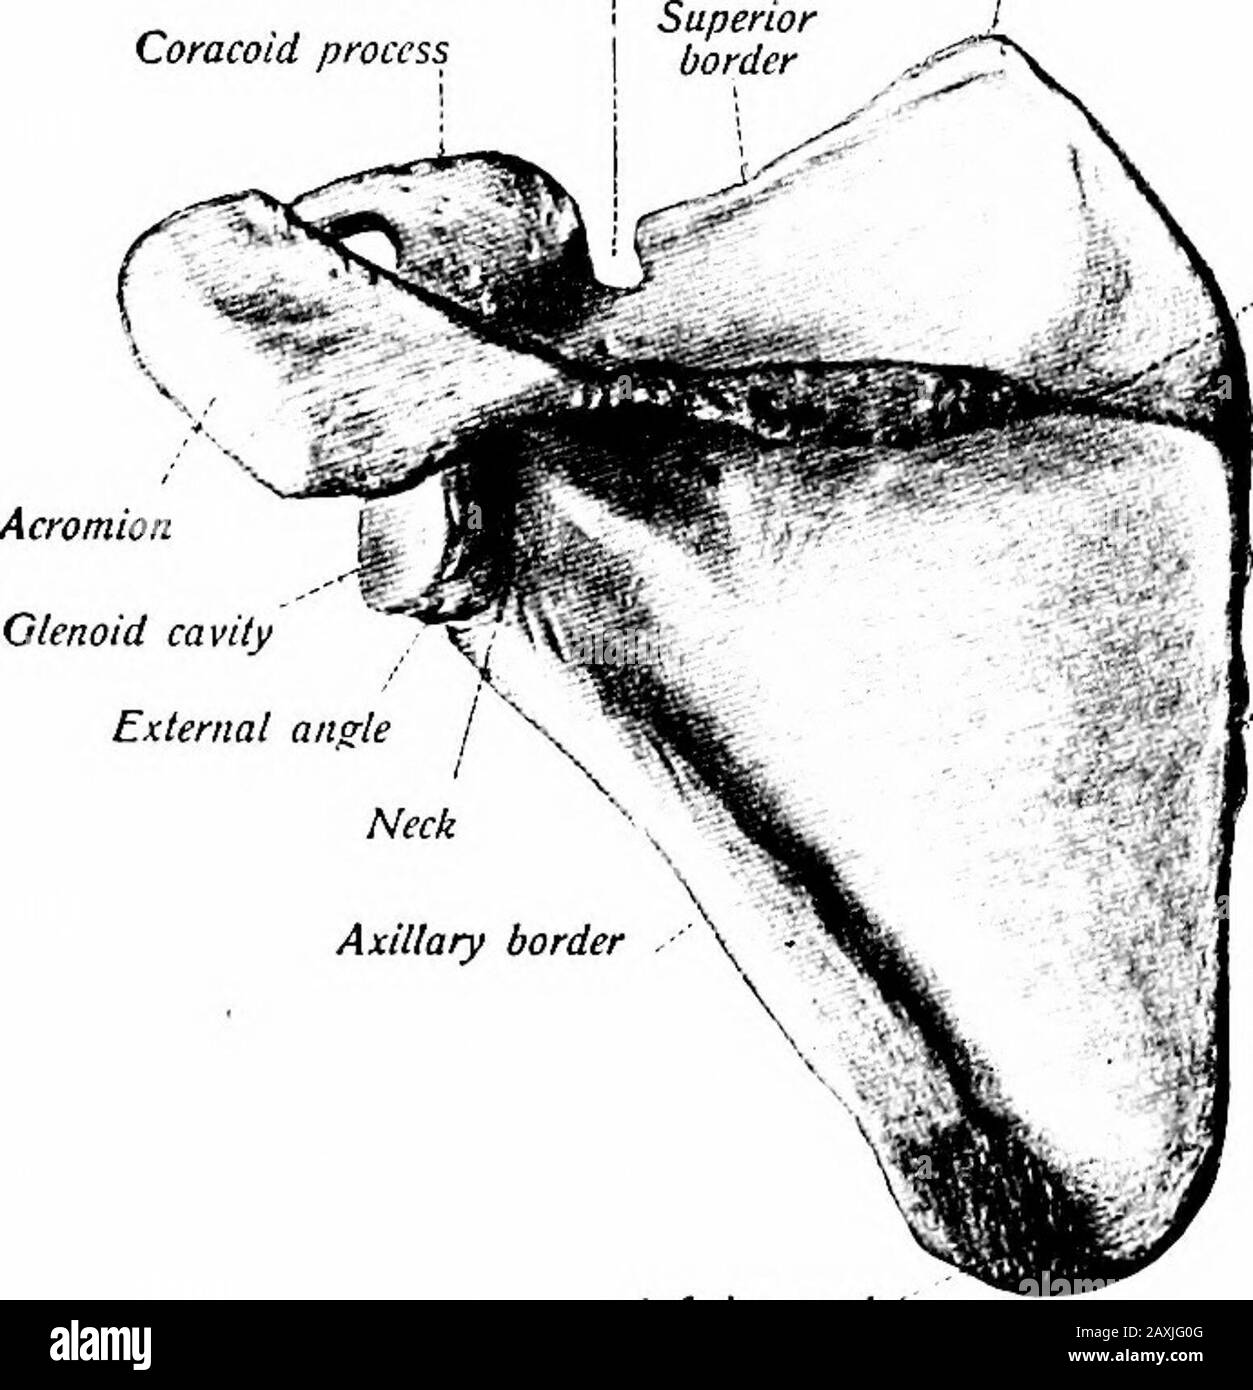 Ein Handbuch der Anatomie . , oder Wirbelrand der m. Serratus anterior wird eingefügt.Die überragende Hälfte des seitlichen oder achselständigen Randes vertieft die Fossa in diesem Bereich stark. Die Oberfläche des Knochens zeigt Abscheidungen, die zum Hals hin zusammenlaufen. Die Fossa und die Grate geben dem m. Subscapularis ihren Ursprung. Die dorsale Oberfläche {verblasst dorsalis) wird, fast horizontal, von der Wirbelsäule durchzogen, die diese Oberfläche in zwei Portionen oder Fossae teilt.Die obere, kleinere supraspinöse Fossa liegt über der Wirbelsäule und Thelatter bildet ihren Boden. Aus dem äußeren Teil entsteht der m. Supraspinatus. Diese Fossa Comm Stockfoto